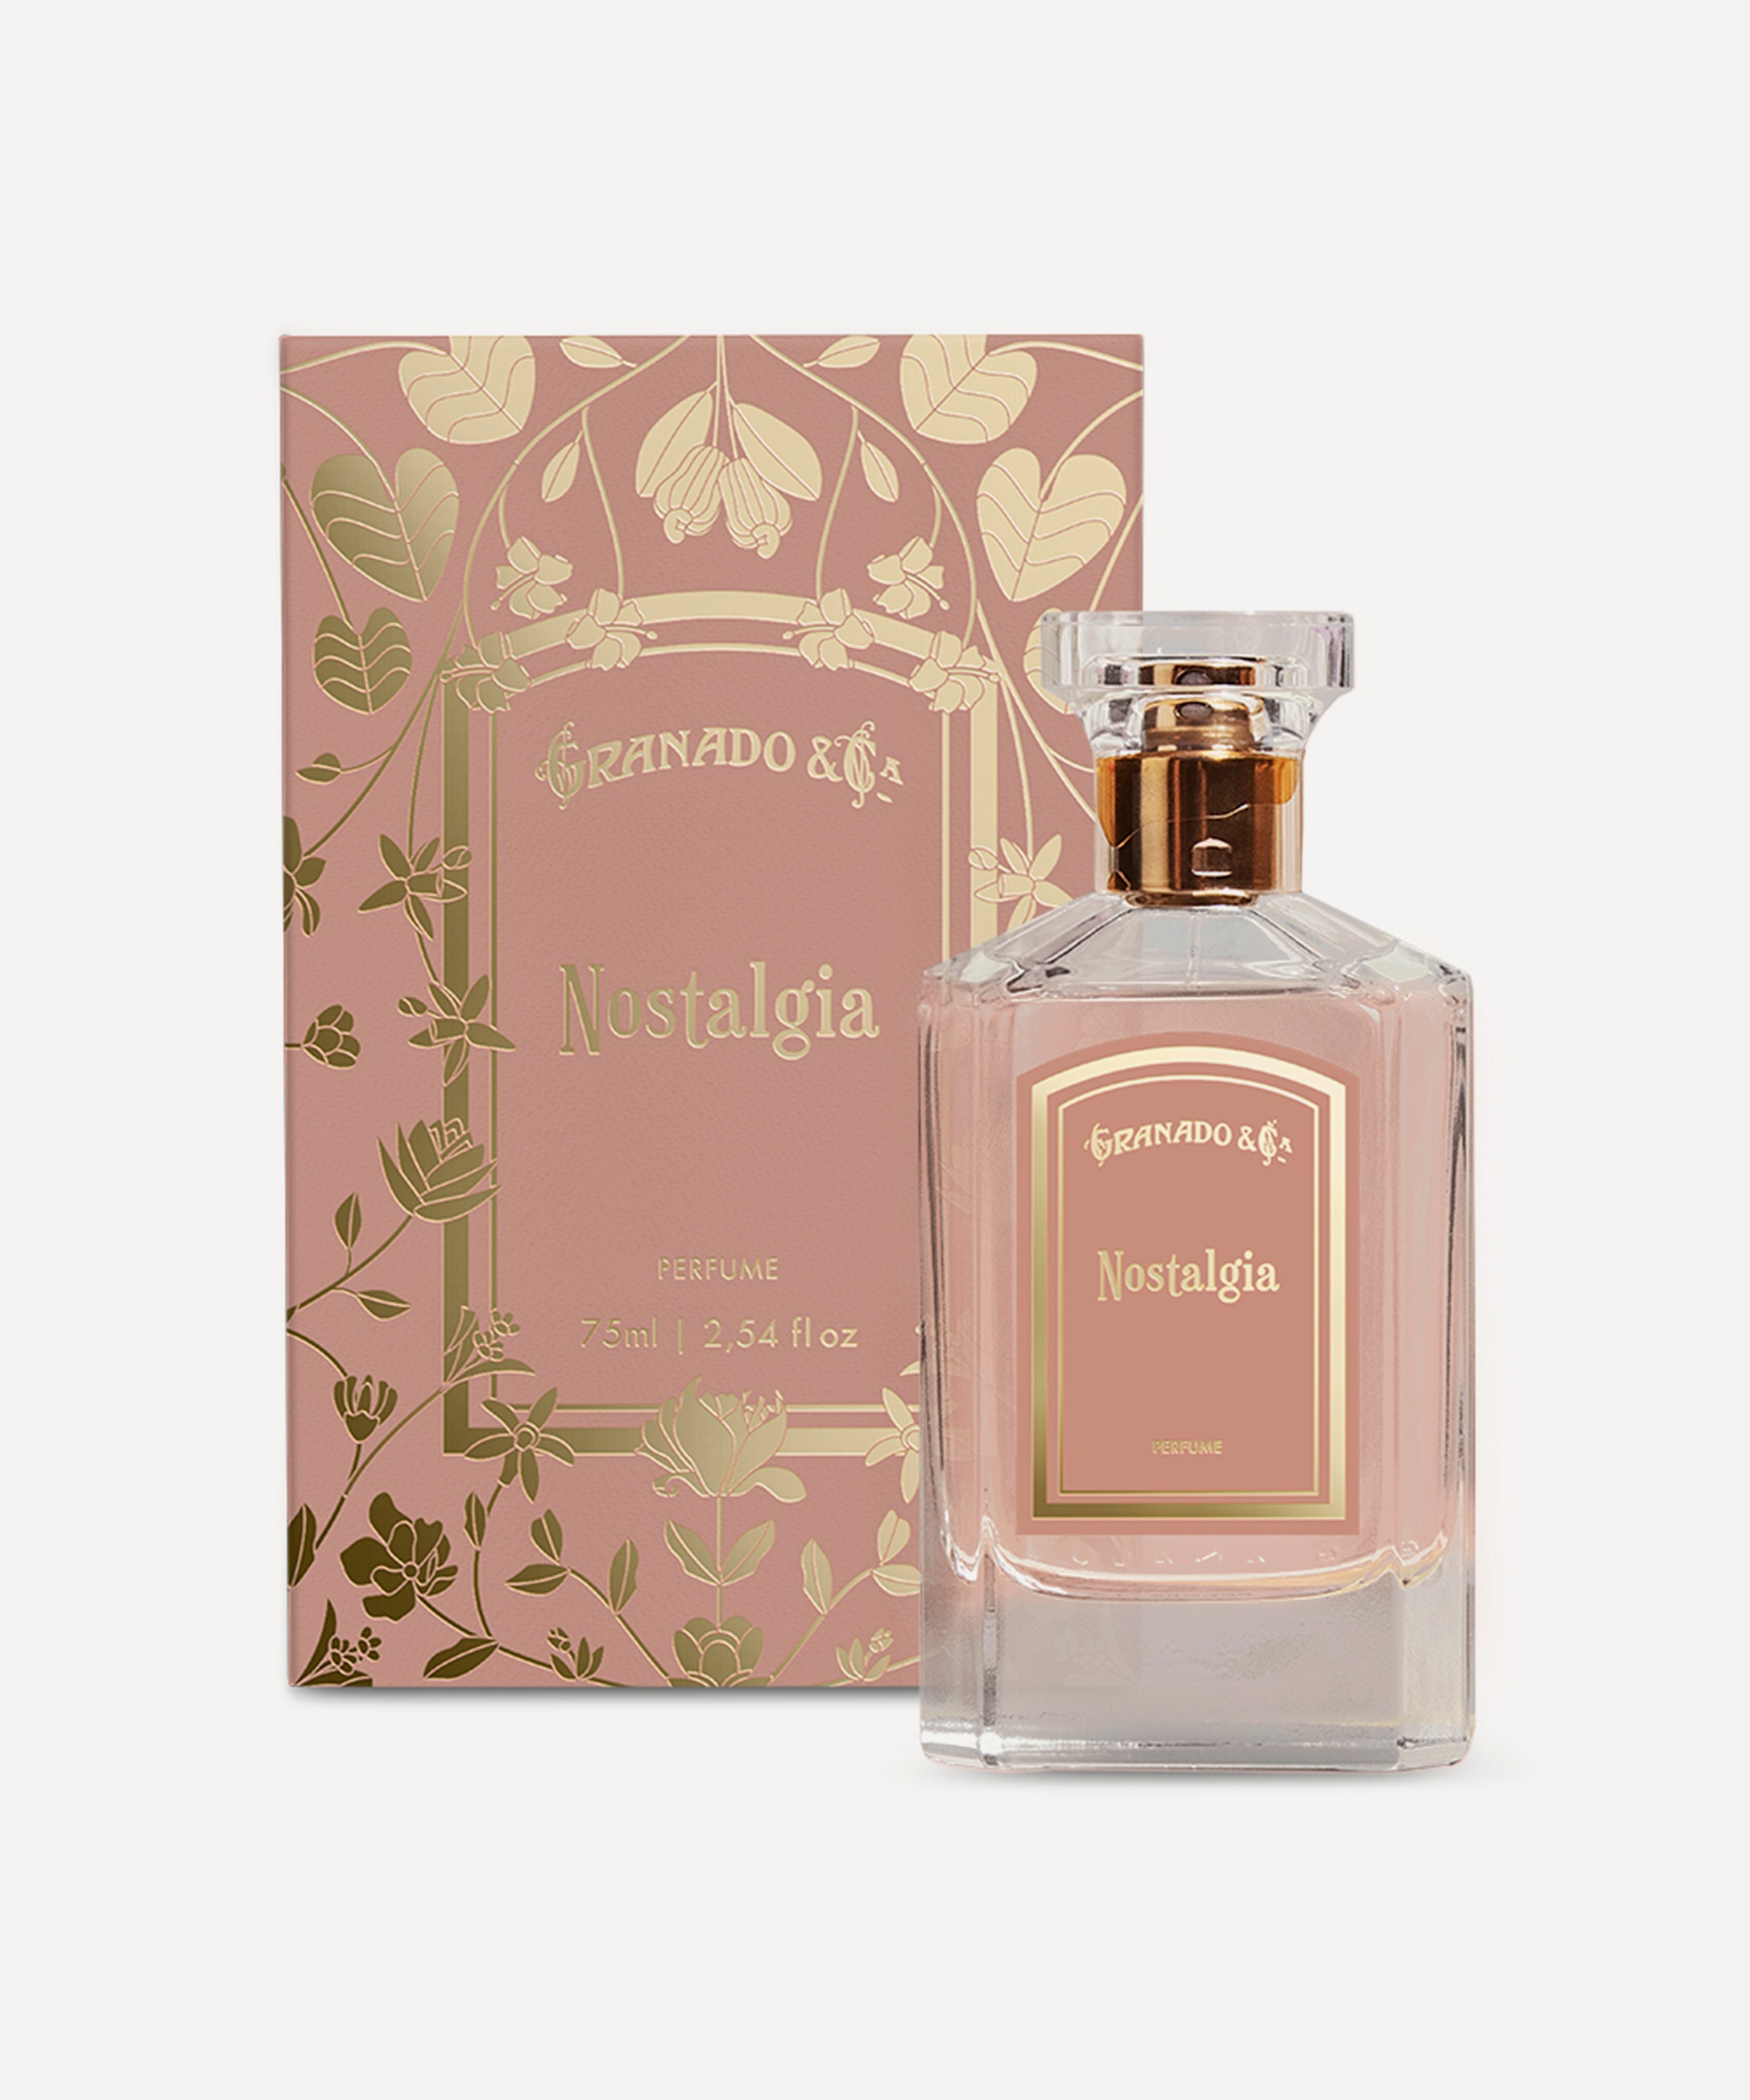 Granado - Nostalgia Eau de Parfum 75ml